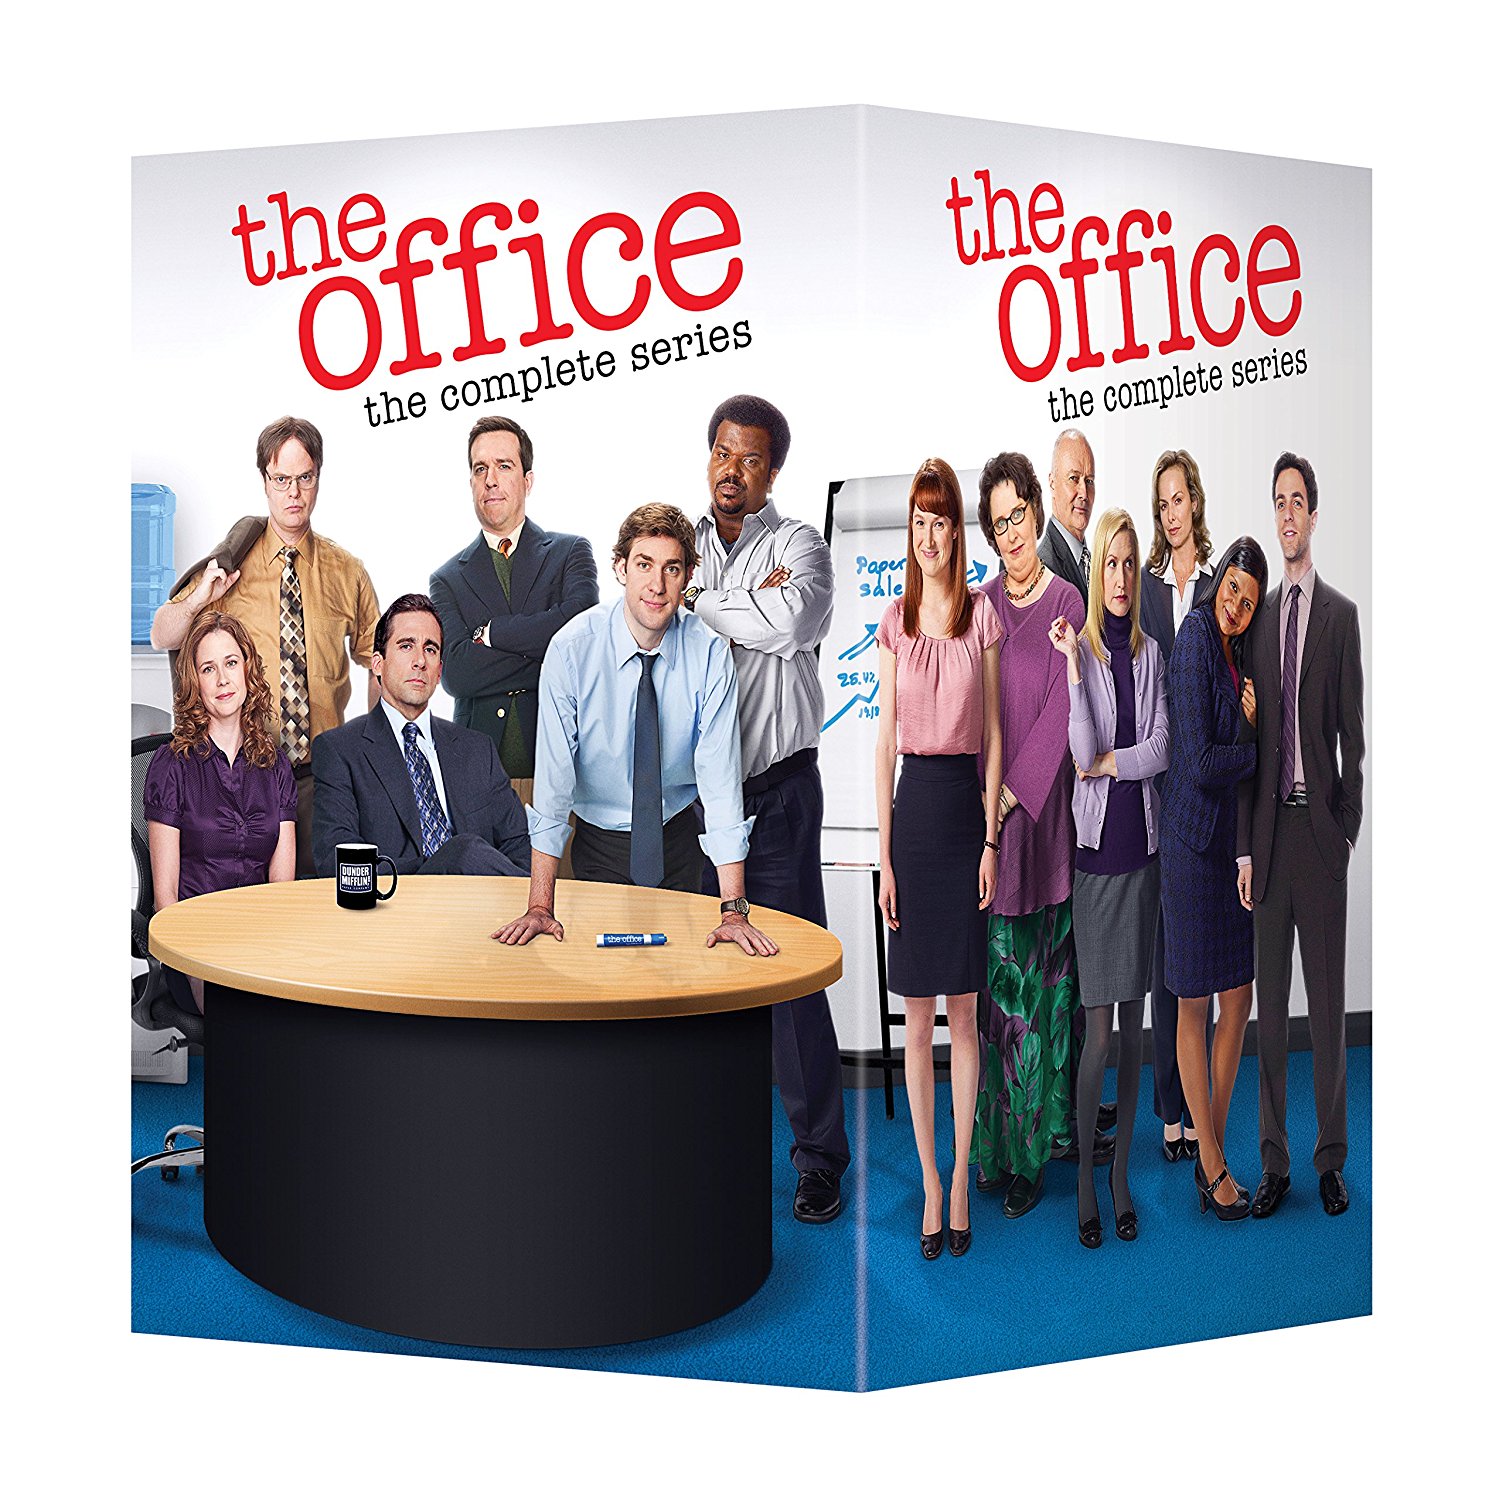 The Office Dvd Amazon